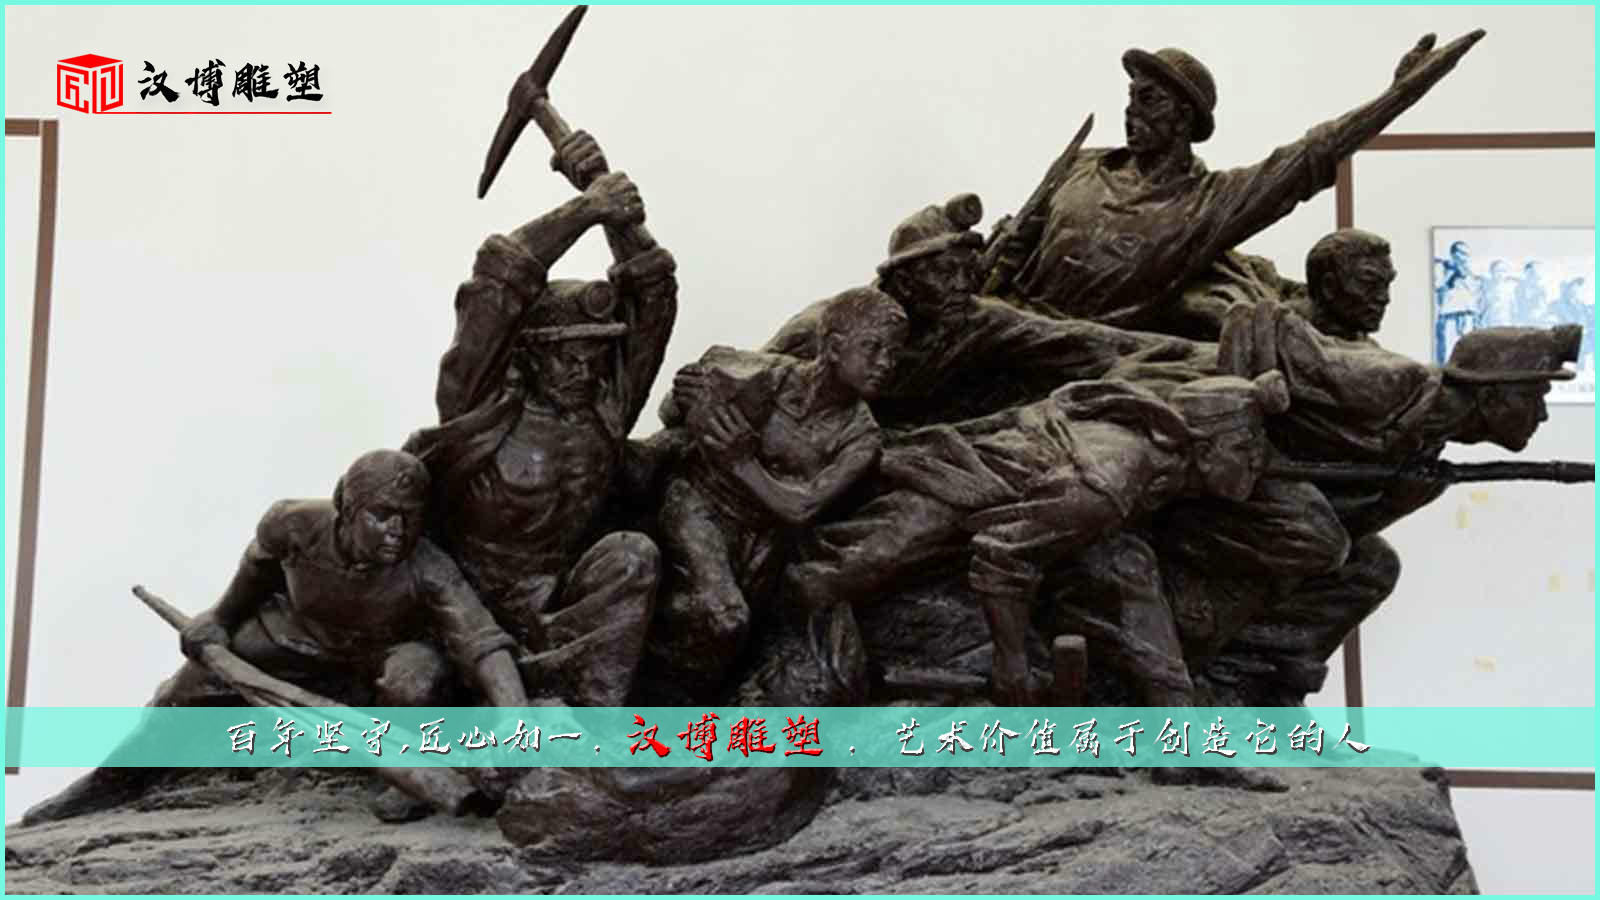 纪念性铜雕,工人运动雕像,博物馆雕塑